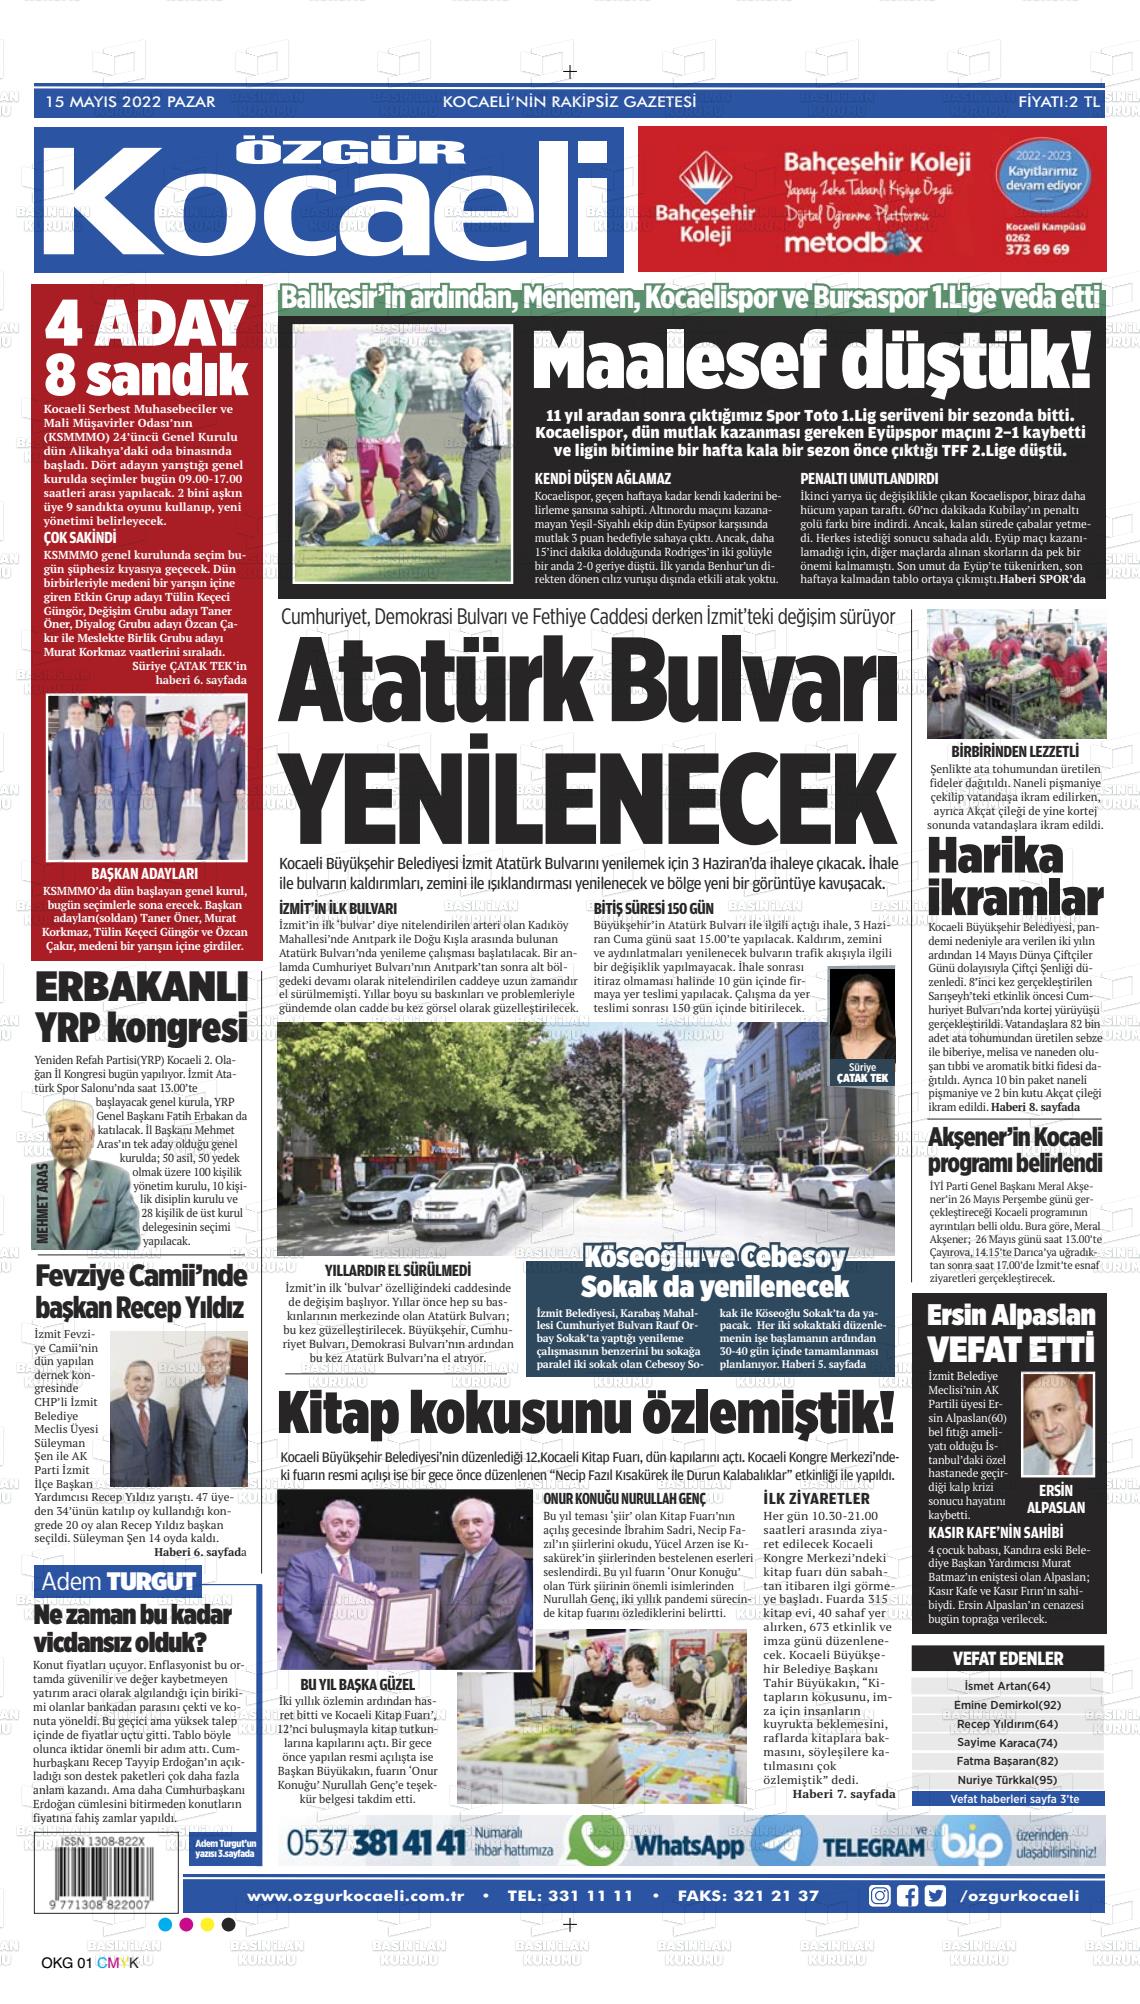 15 Mayıs 2022 Özgür Kocaeli Gazete Manşeti